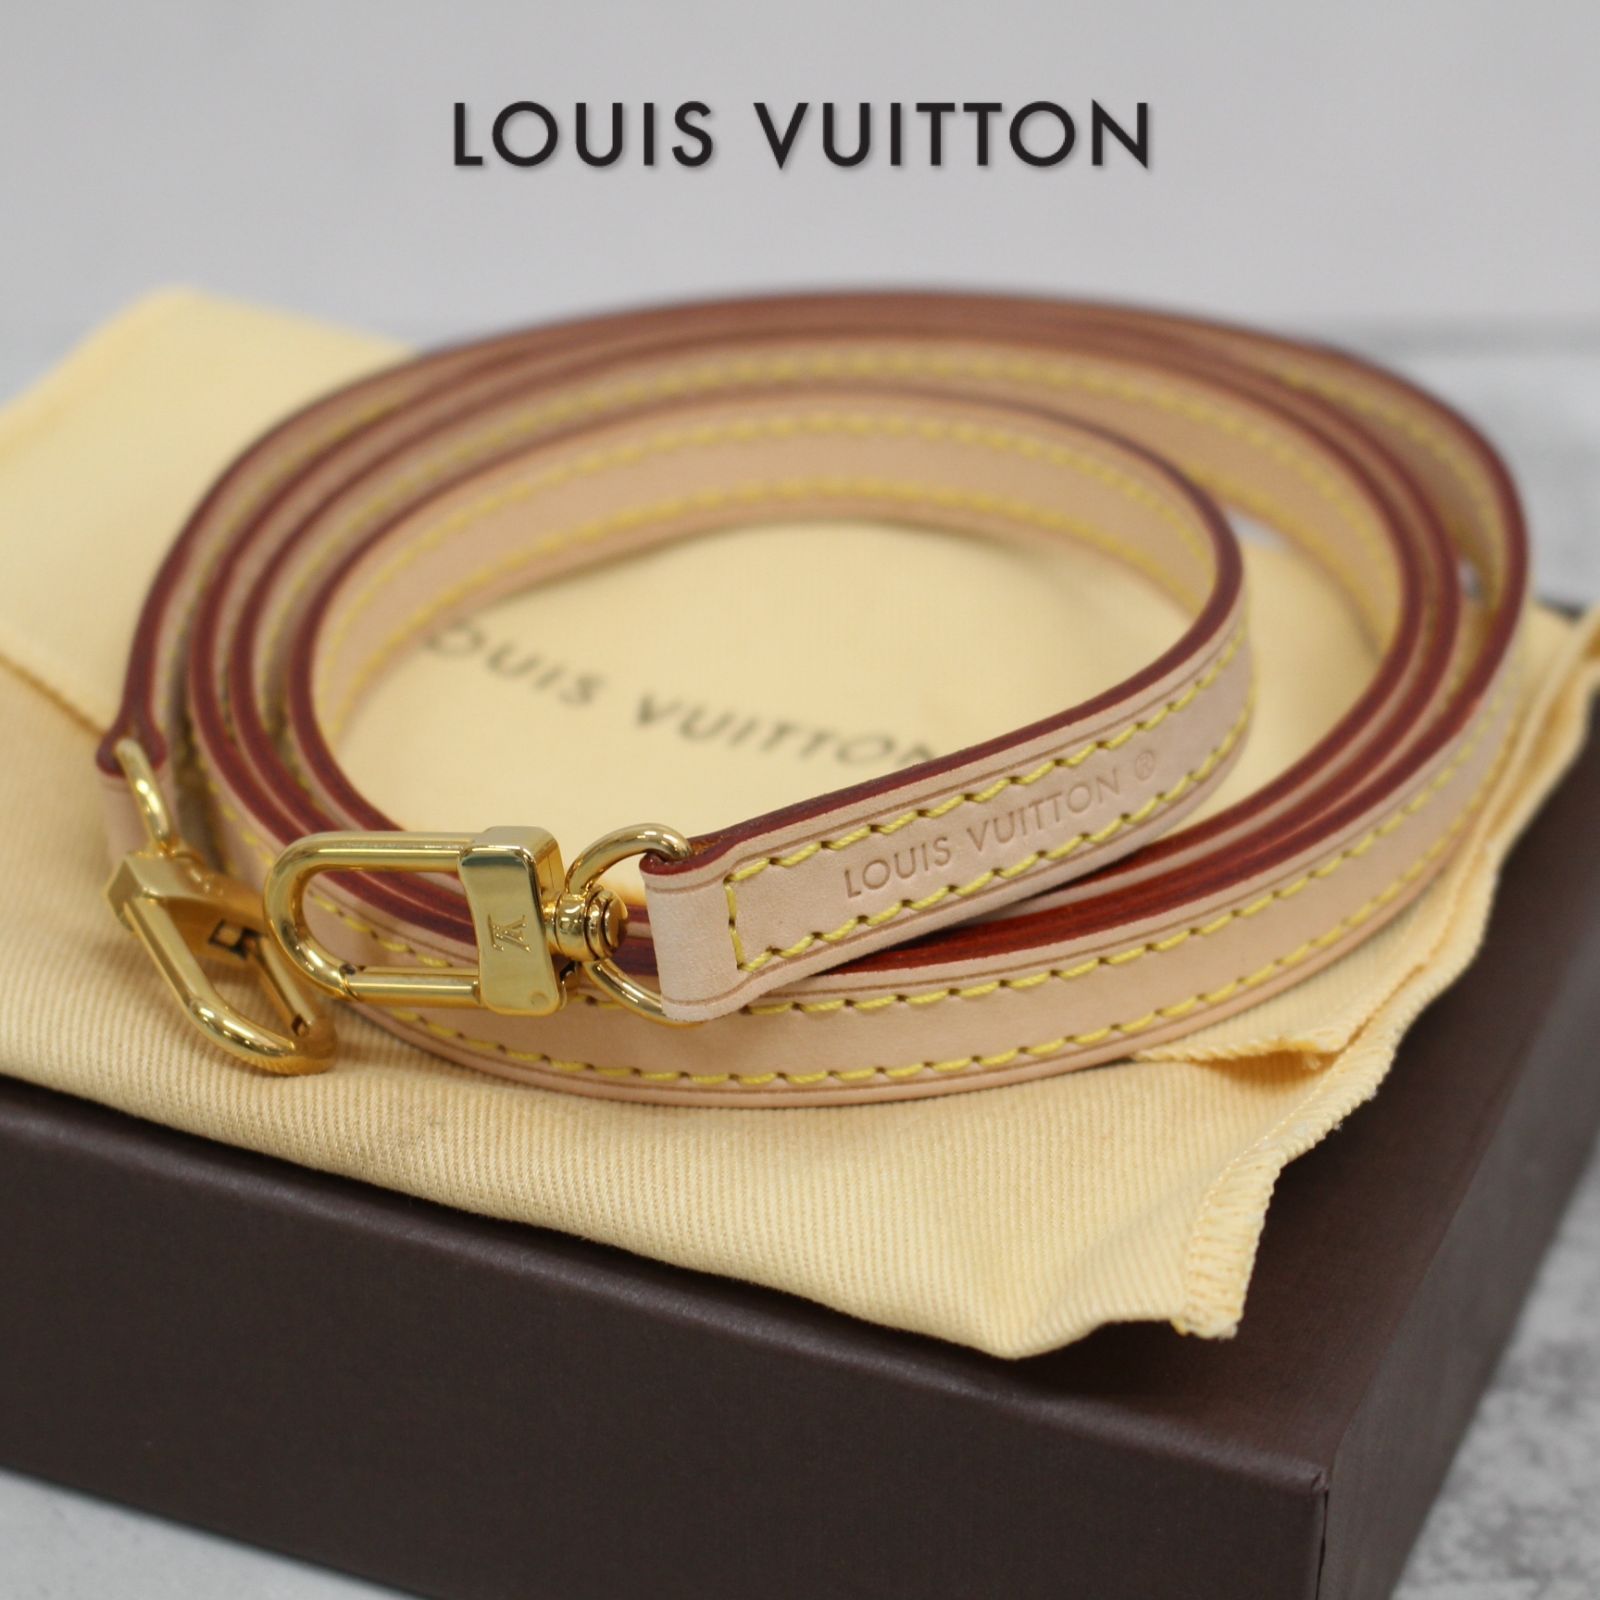 S111)【美品】LOUIS VUITTON ショルダーストラップ ヌメ革 箱・保存袋